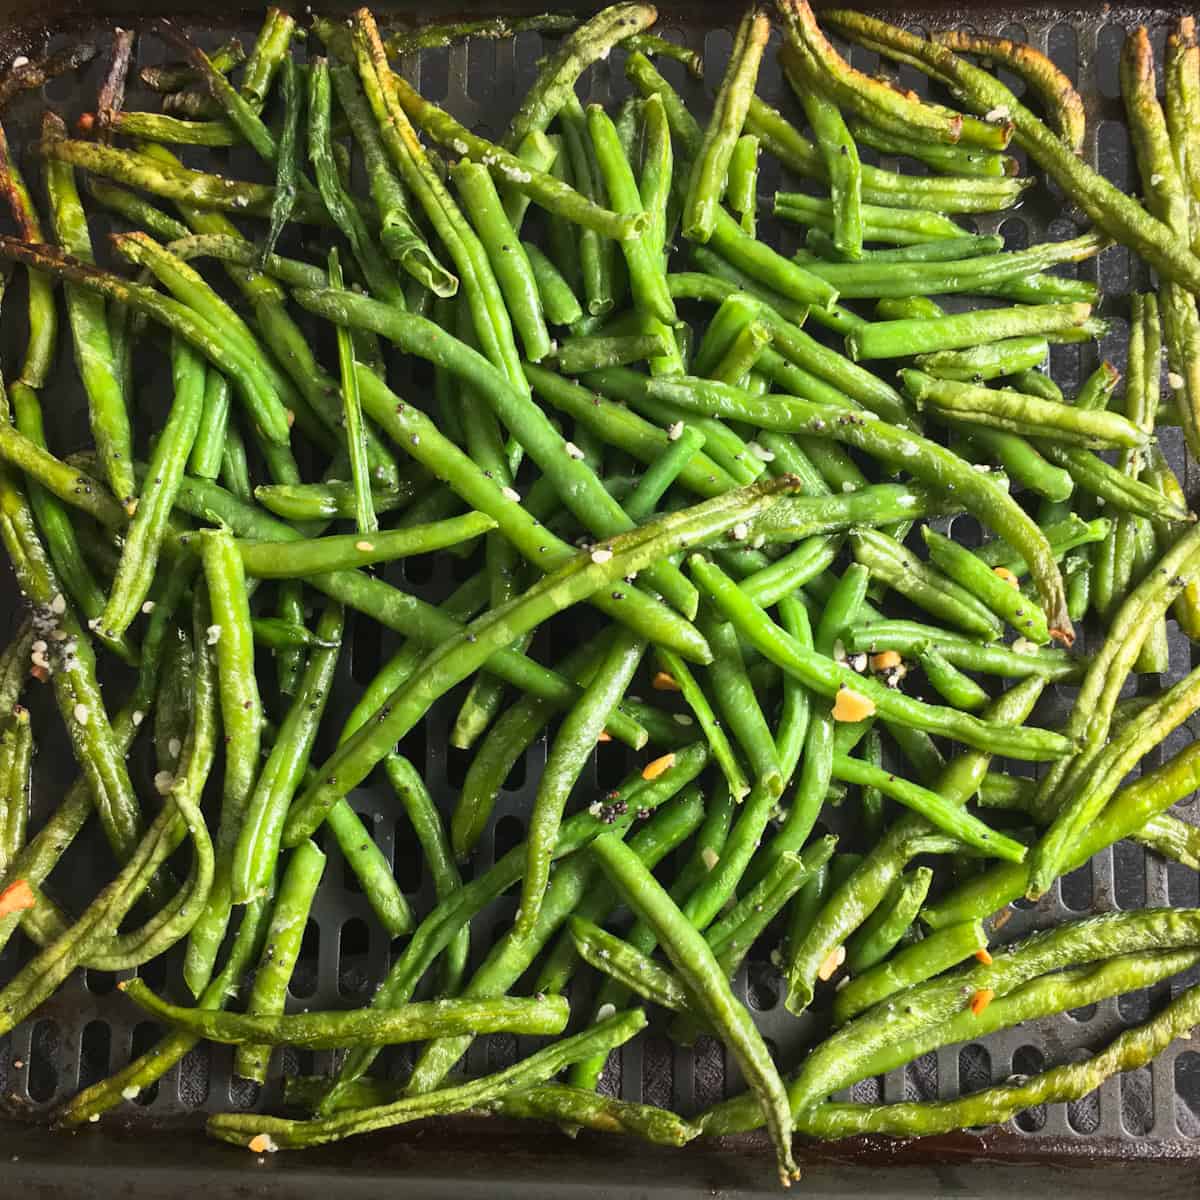 frozen green beans air fryer